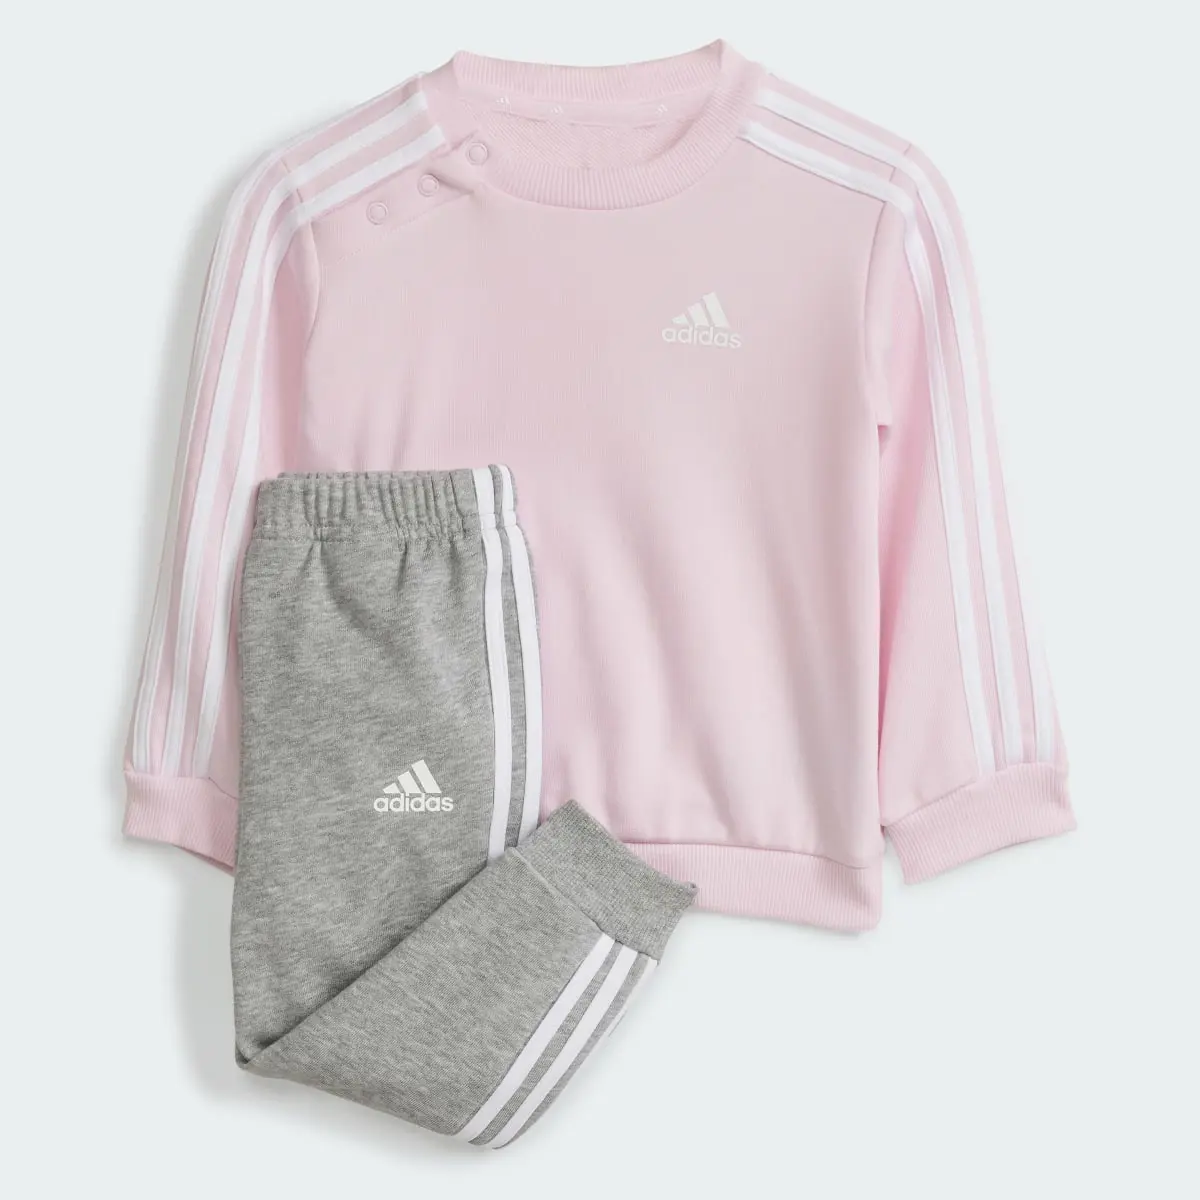 Adidas Tuta Essentials 3-Stripes Jogger Infant. 1